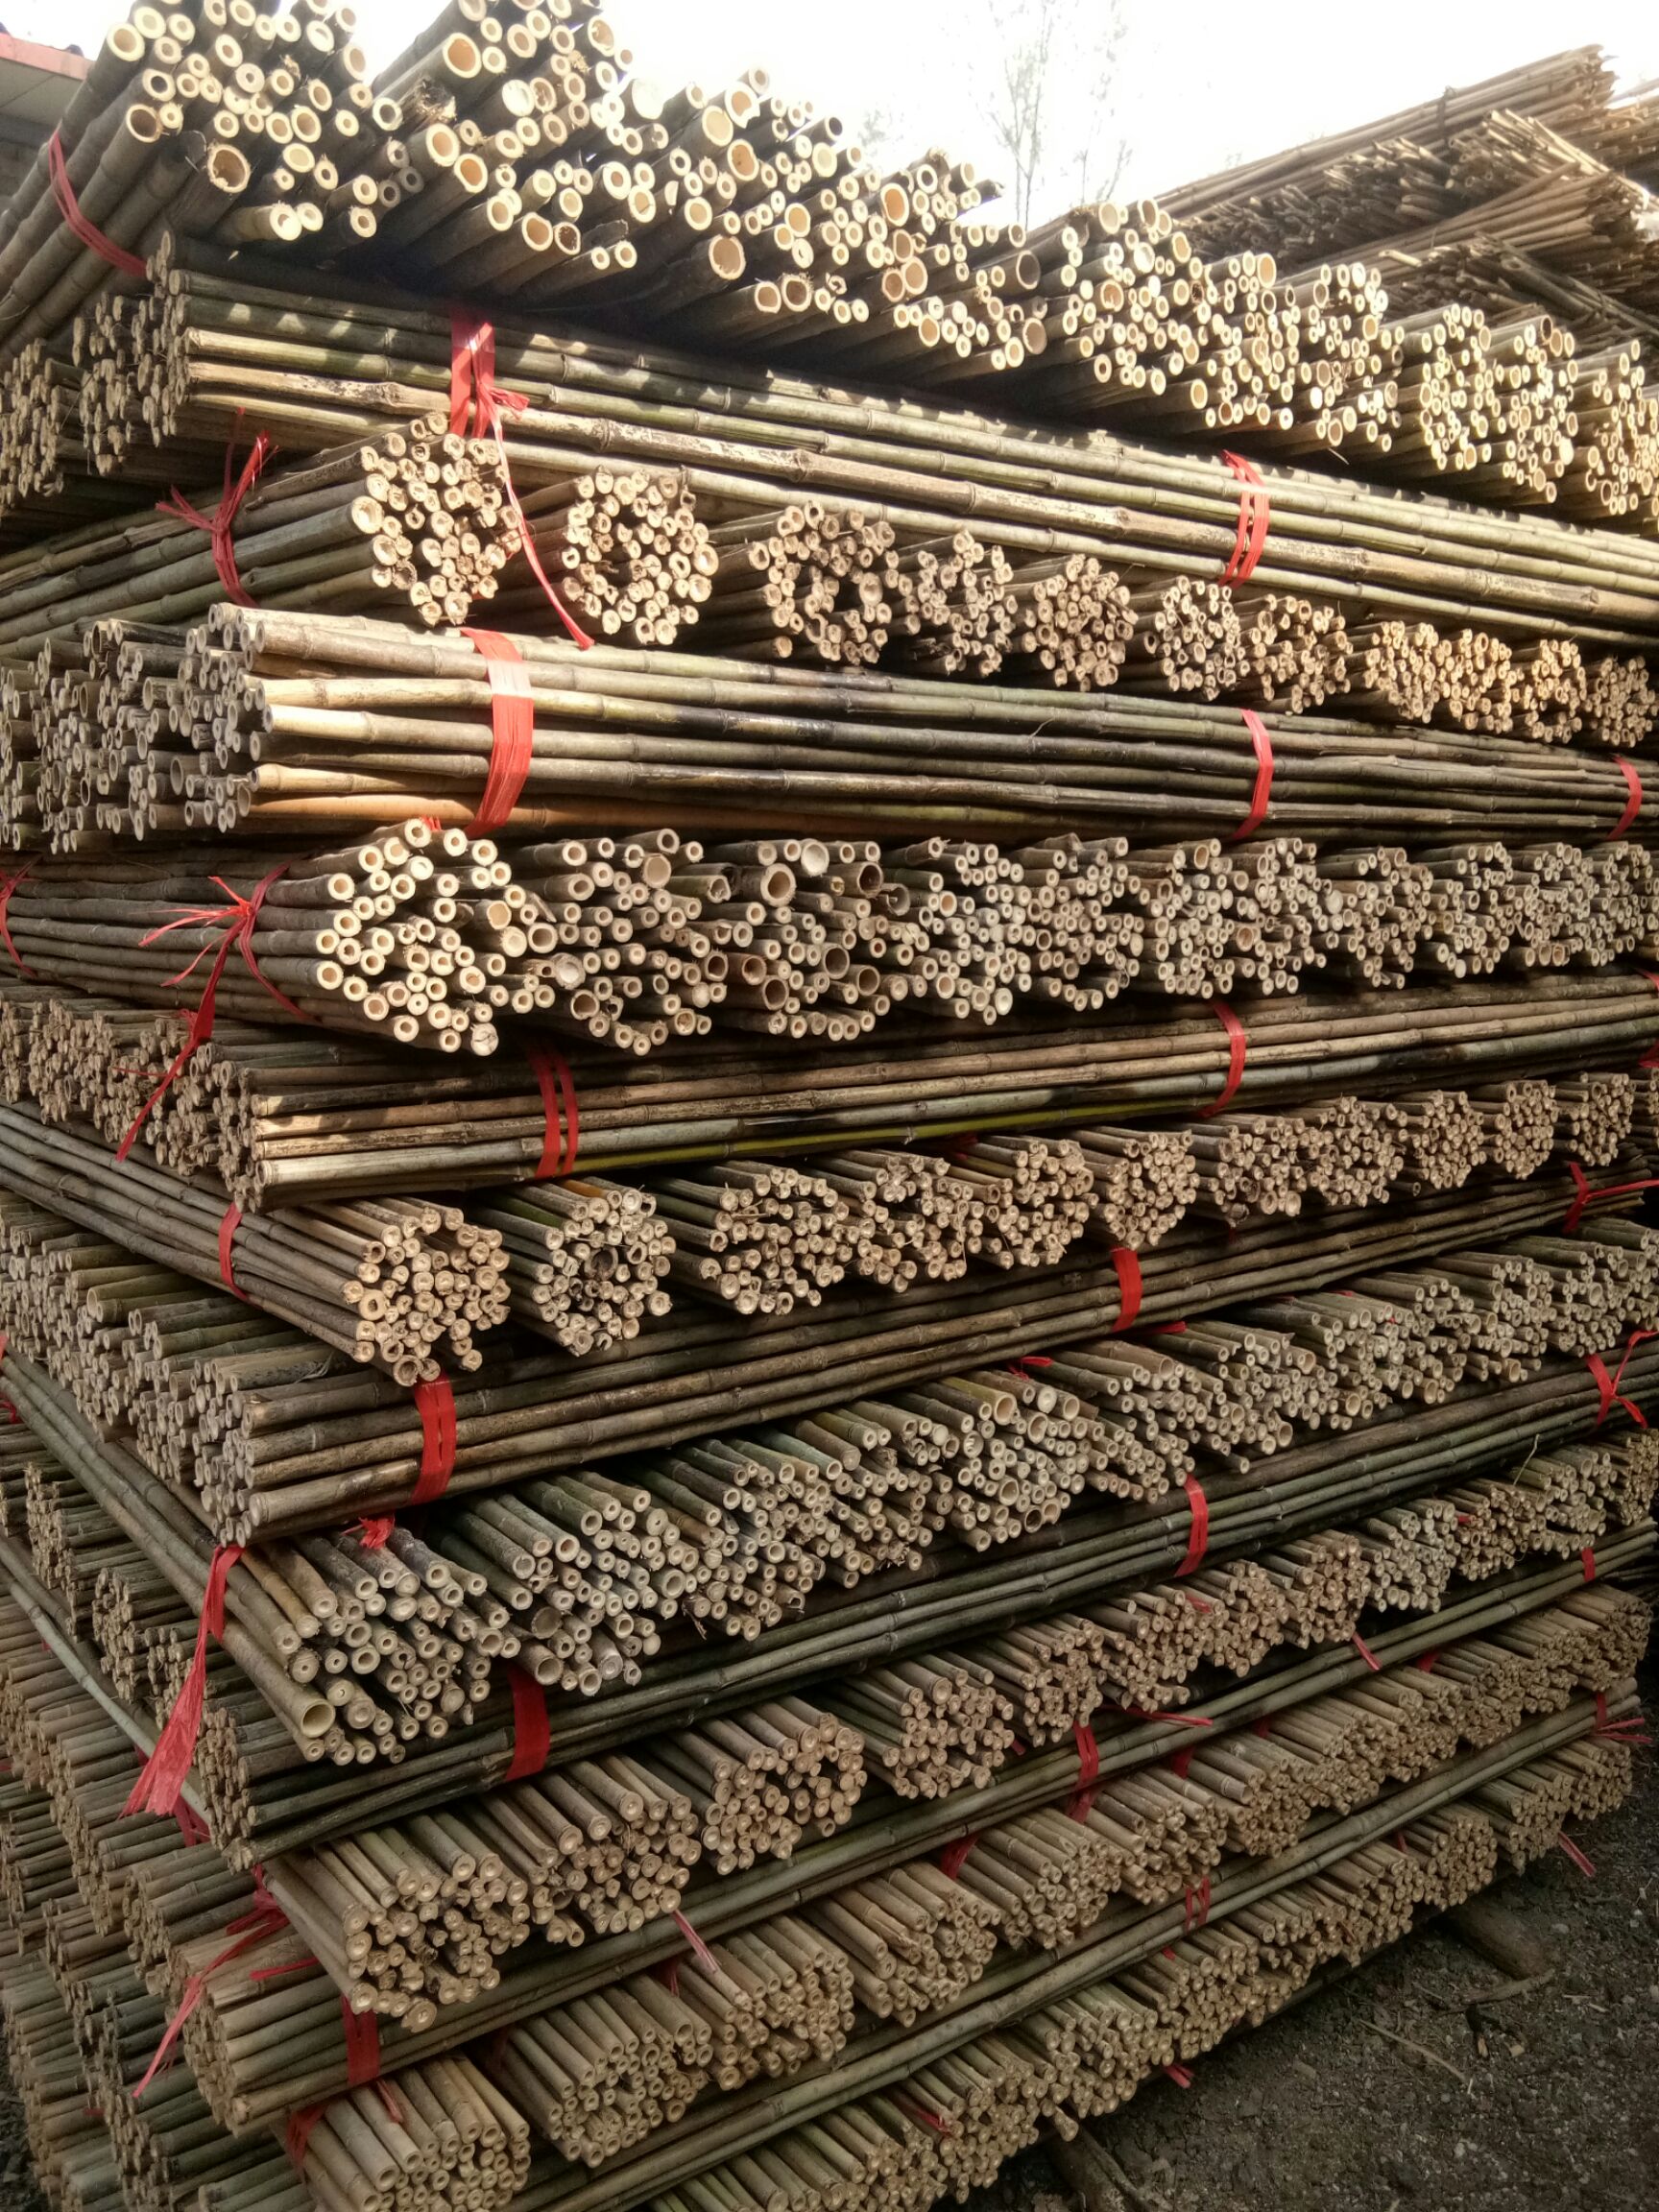 竹竿2米长旗杆 烤杆 加工好成品现货 每捆标准50根 大量批发